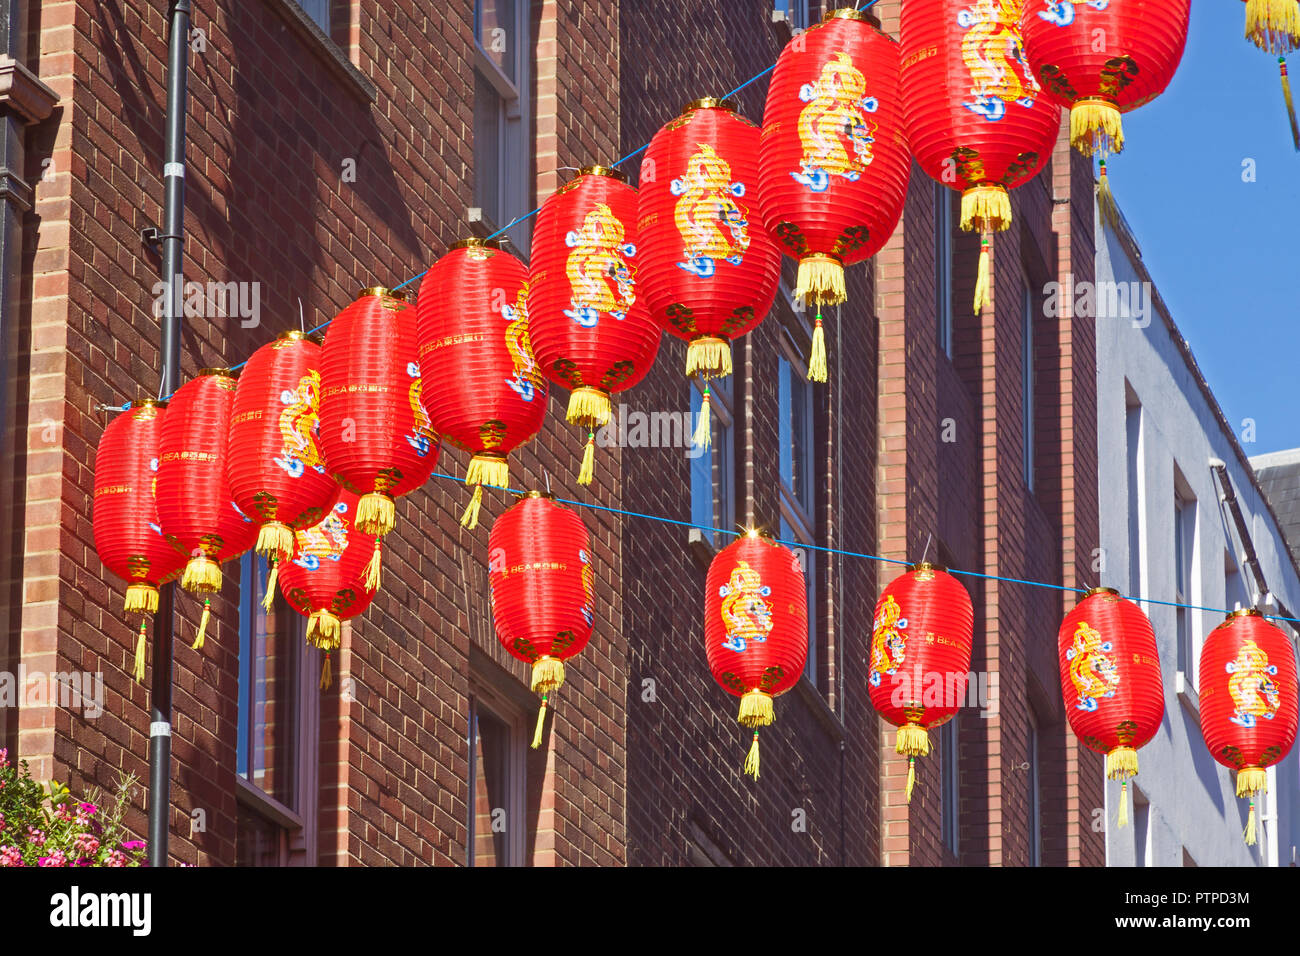 Londres, Westminster lampions suspendus dans Newport Place dans Chinatown, la célébration de la Mi-Automne Festival chinois de la Lune. Banque D'Images